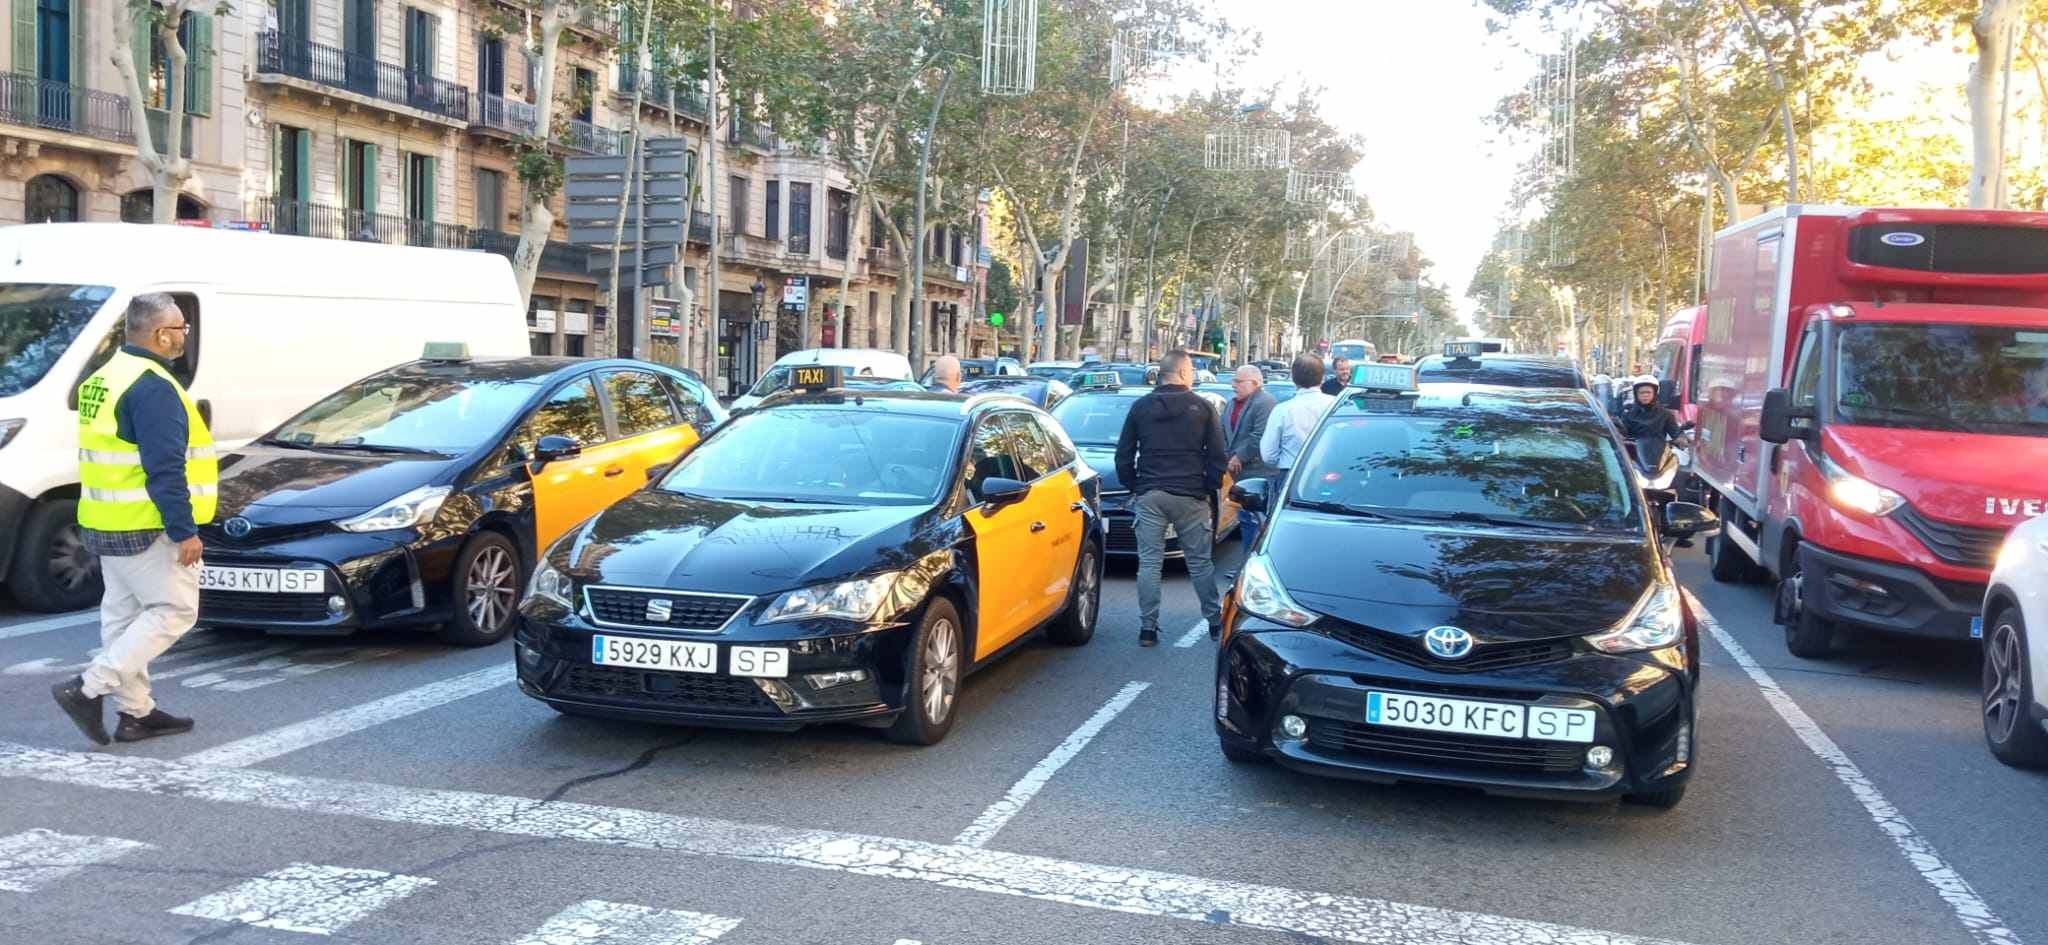 La Autoritat Catalana de Protecció de Dades avala instalar cámaras en los taxis para perseguir agresiones